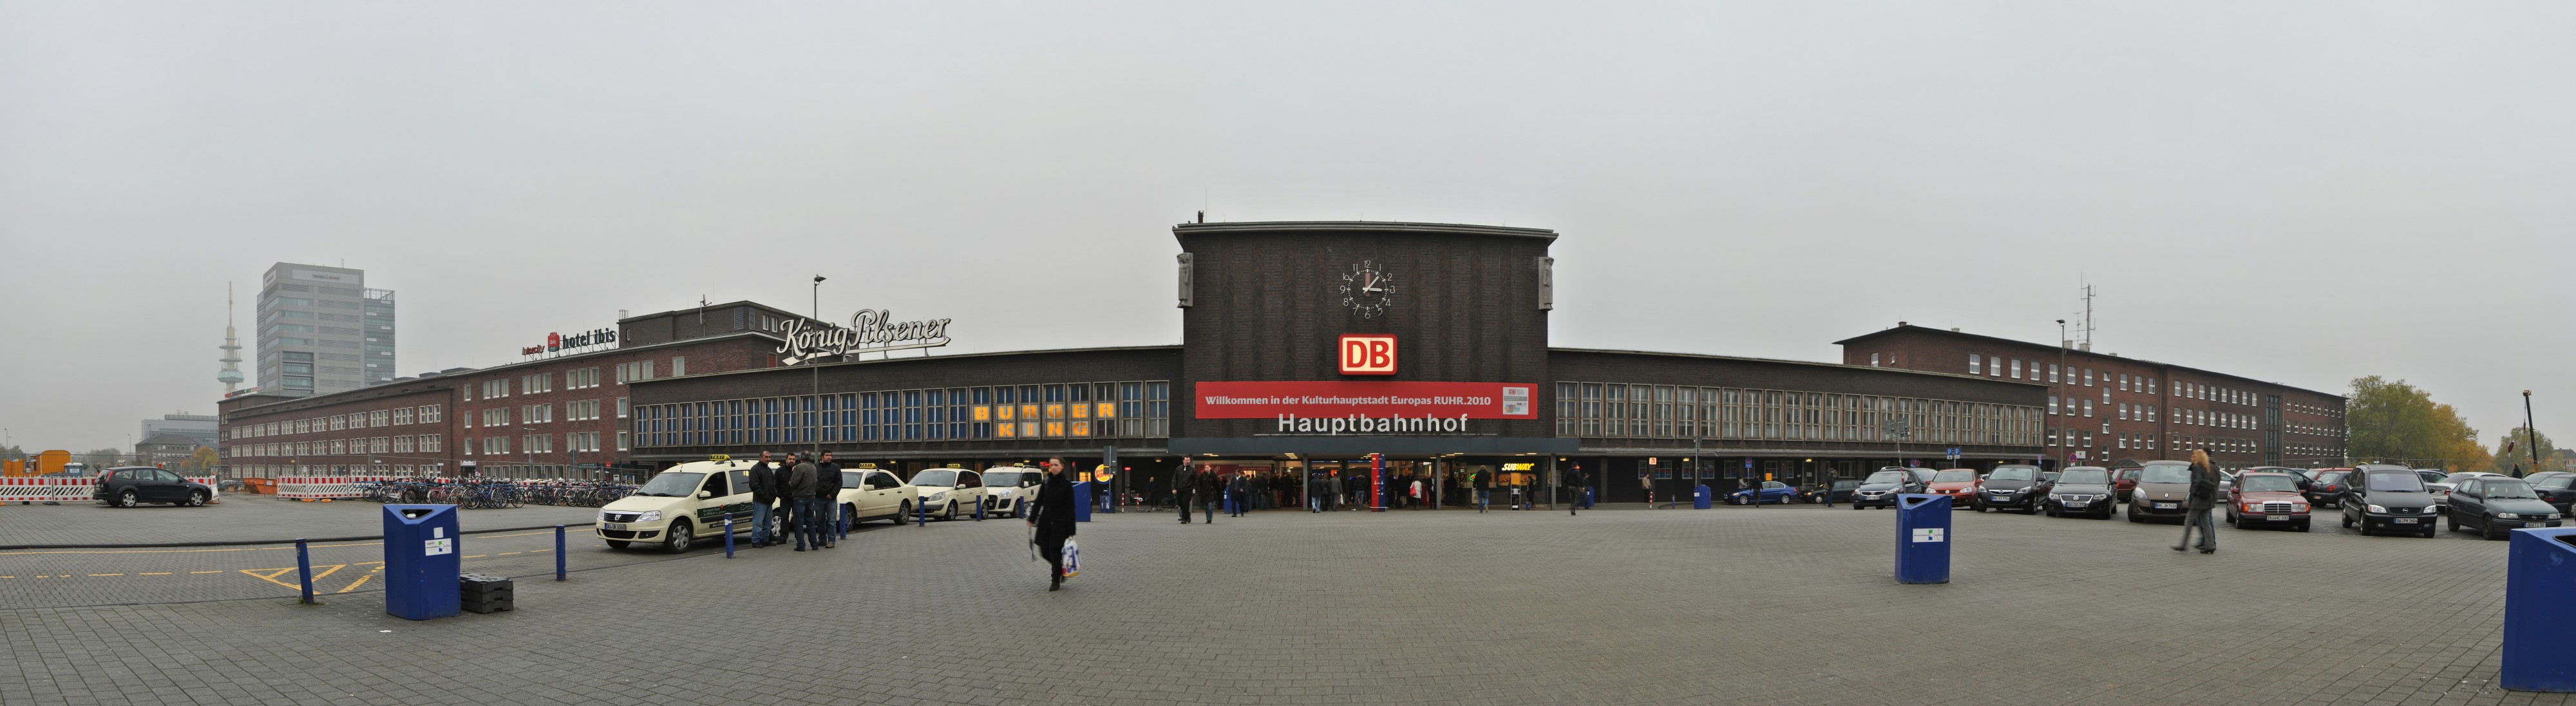 Duisburg, Hauptbahnhof, 2010-11 CN-II